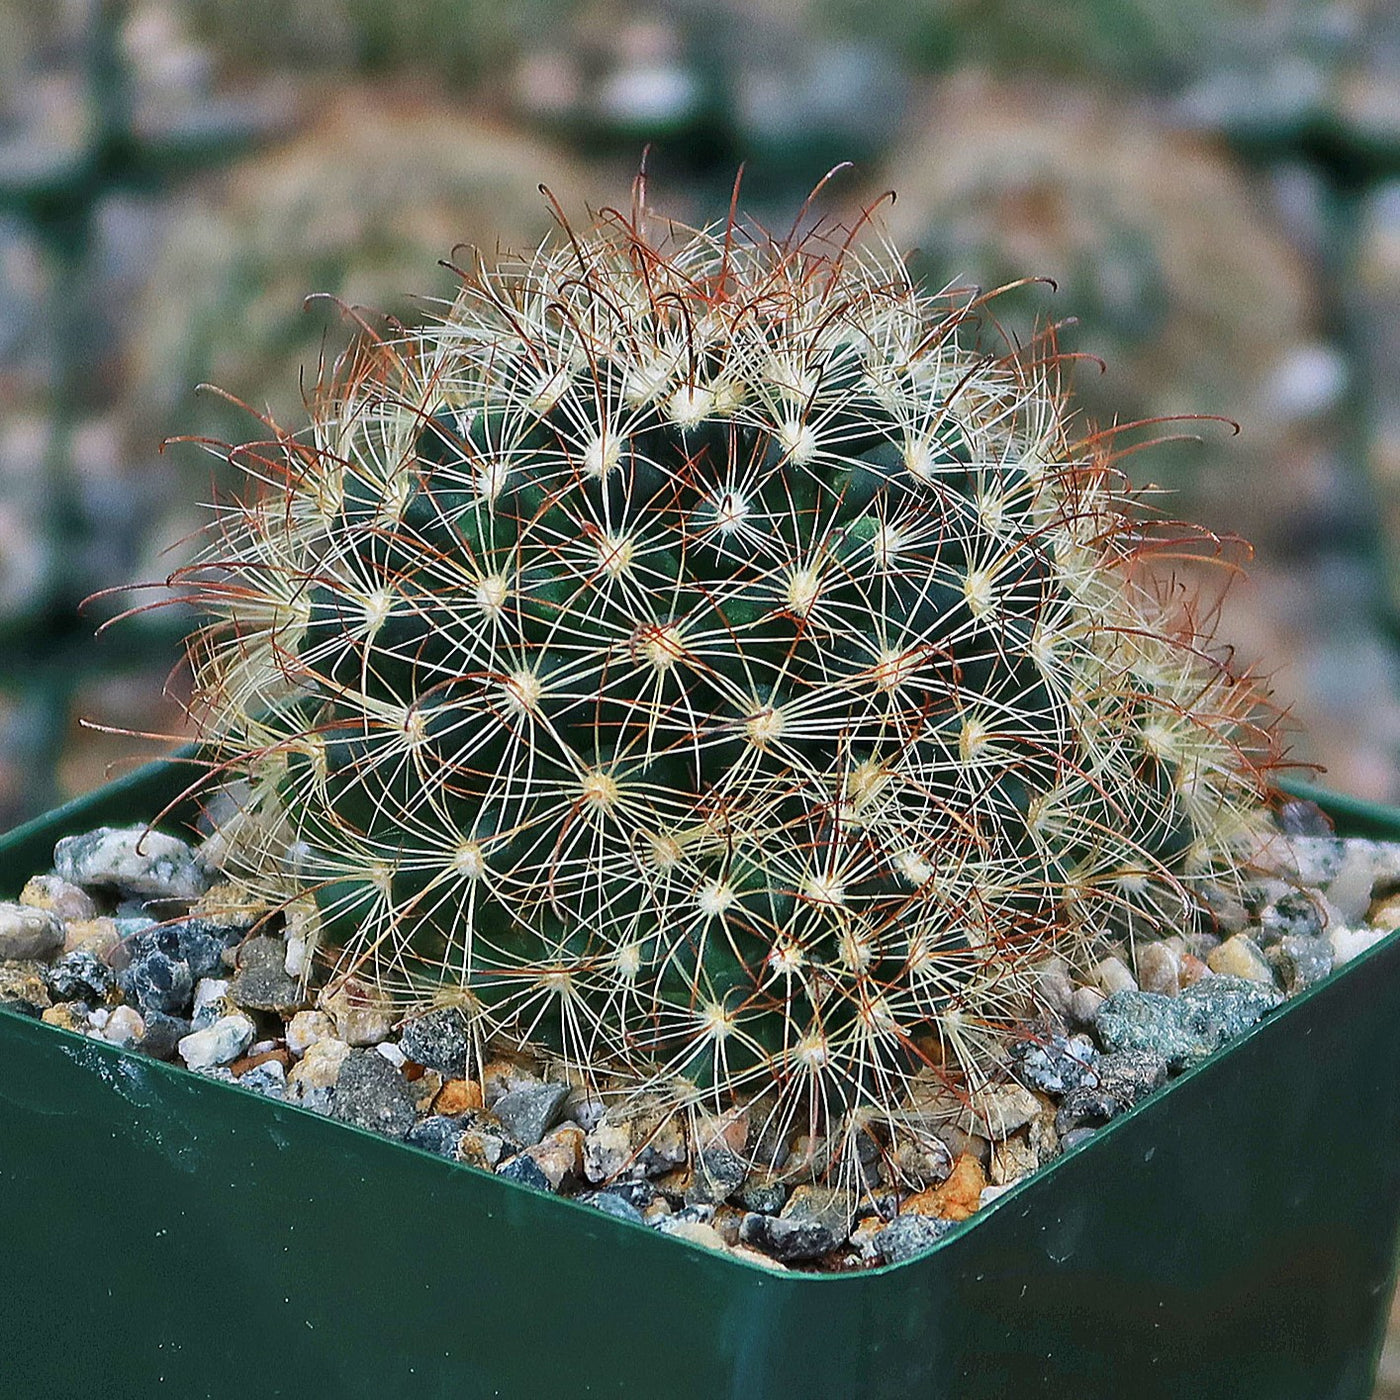 Fishhook Cactus - Mammillaria saffordii 'Carretii